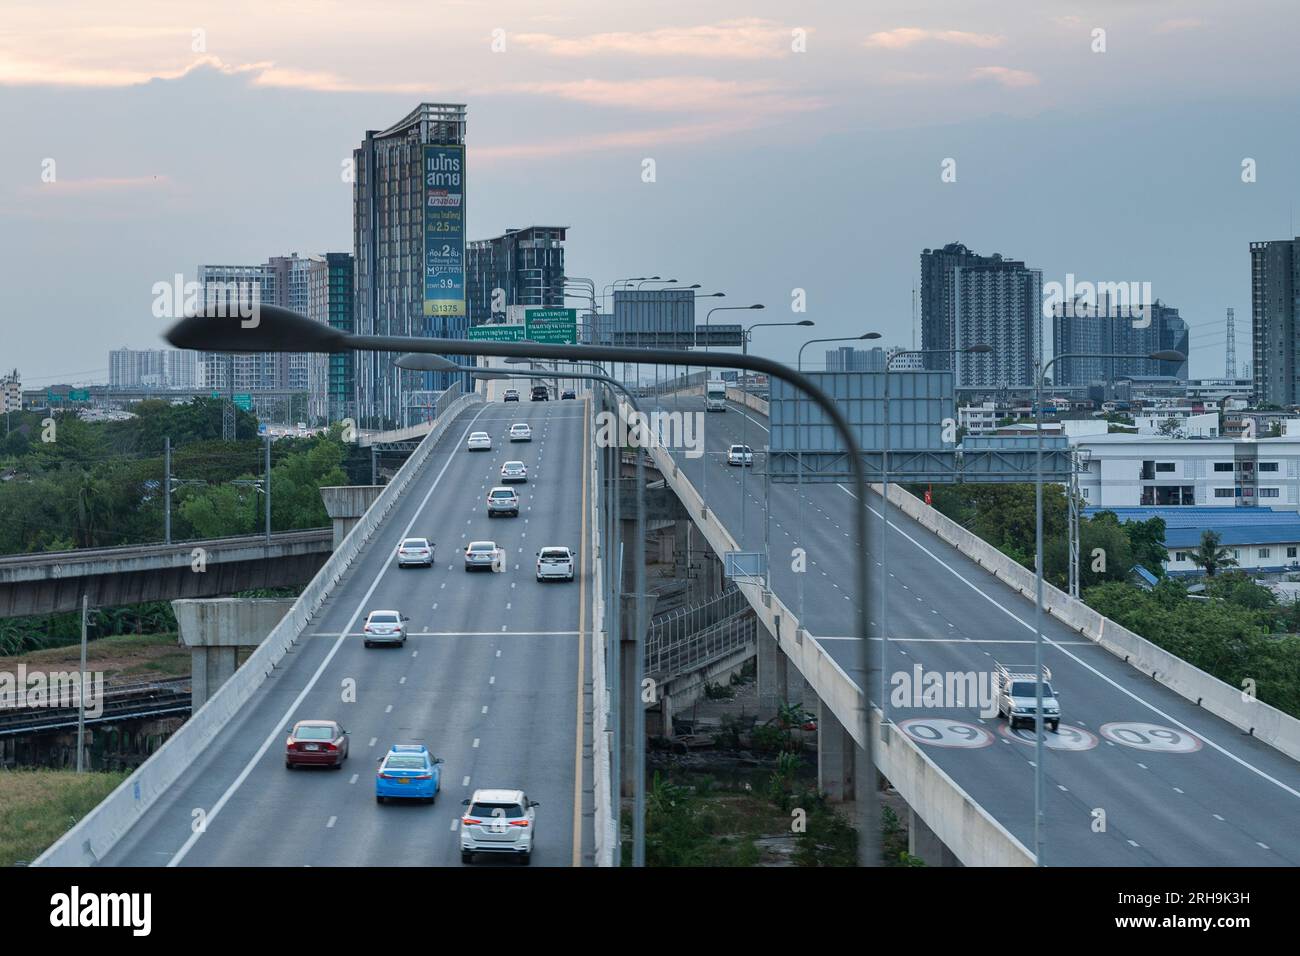 View of Kuala Lumpur from Mass Rapid Transit (MRT) transport system Stock Photo